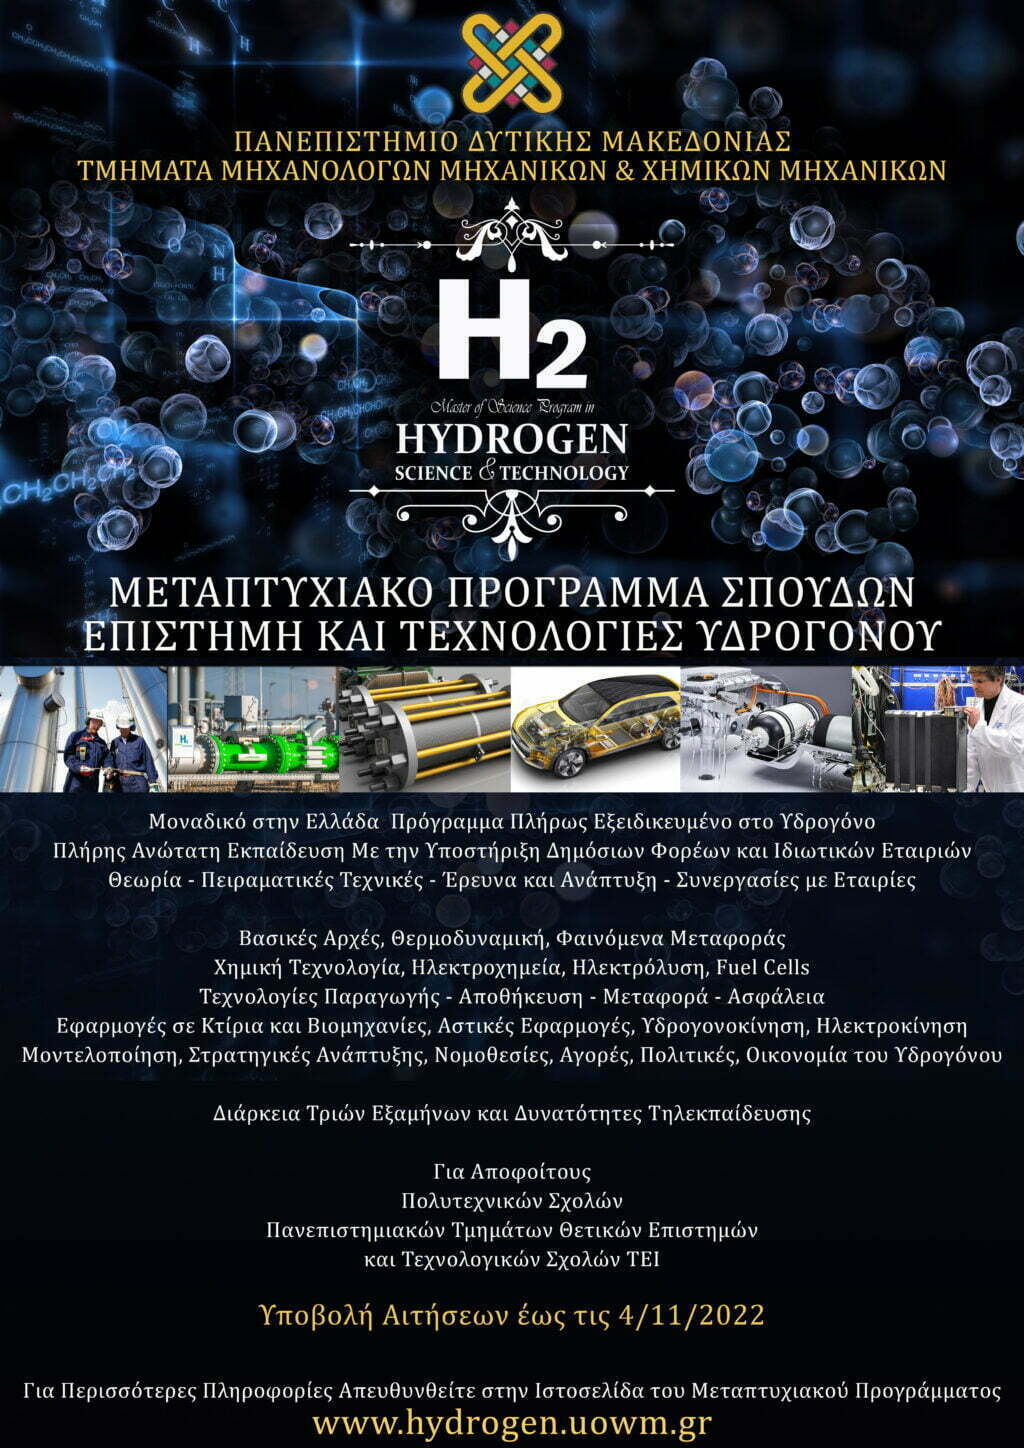 Τα Τμήματα Μηχανολόγων Μηχανικών και Χημικών Μηχανικών του Πανεπιστημίου Δυτικής Μακεδονίας διοργανώνουν για πρώτη χρονιά και σύμφωνα με τις διατάξεις του Ν.4957/2022 το Διατμηματικό Πρόγραμμα Μεταπτυχιακών Σπουδών (Δ.Π.Μ.Σ.) με τίτλο: